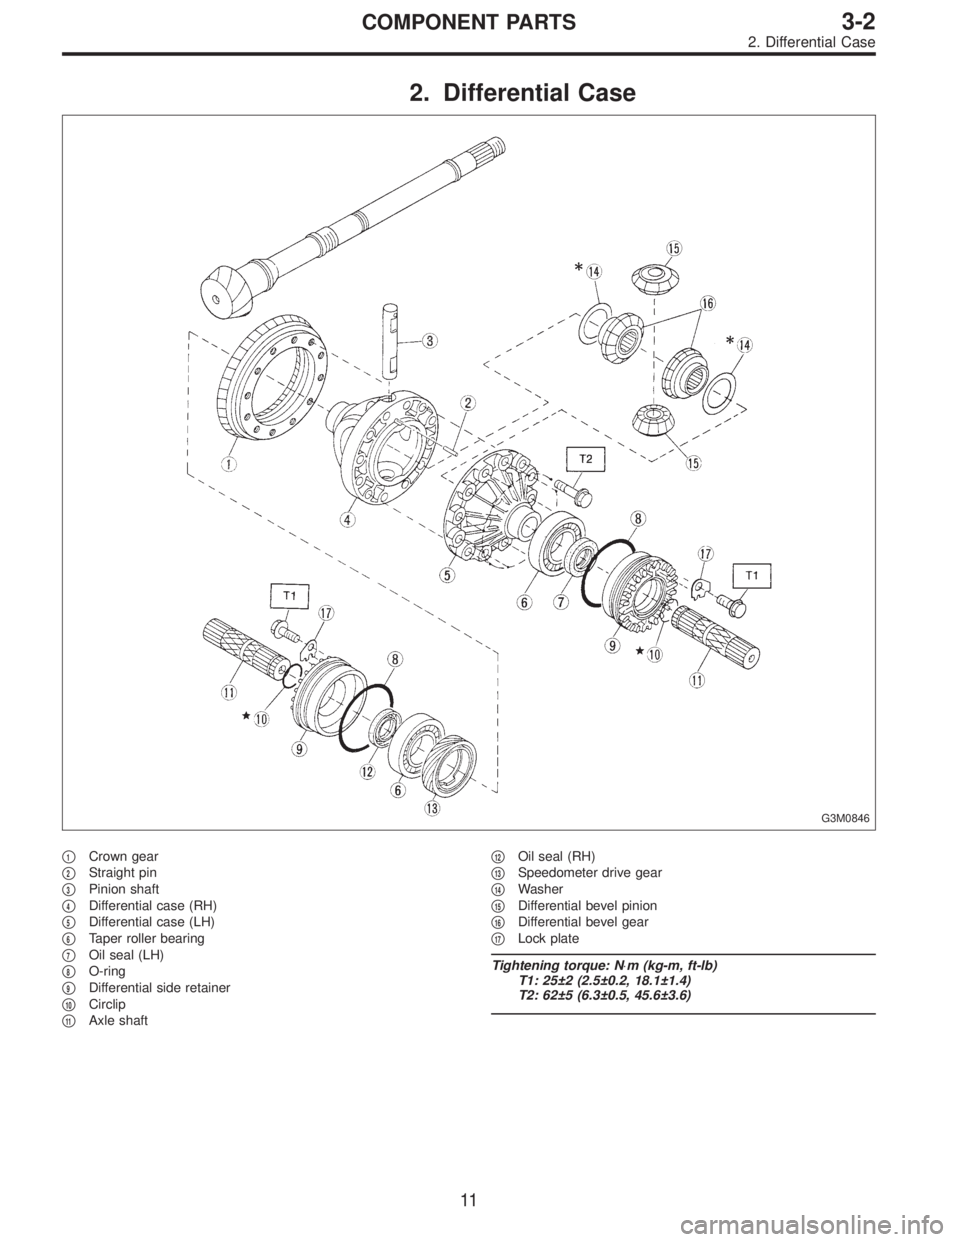 SUBARU LEGACY 1995  Service Repair Manual 2. Differential Case
G3M0846
1Crown gear

2Straight pin

3Pinion shaft

4Differential case (RH)

5Differential case (LH)

6Taper roller bearing

7Oil seal (LH)

8O-ring

9Differential side re